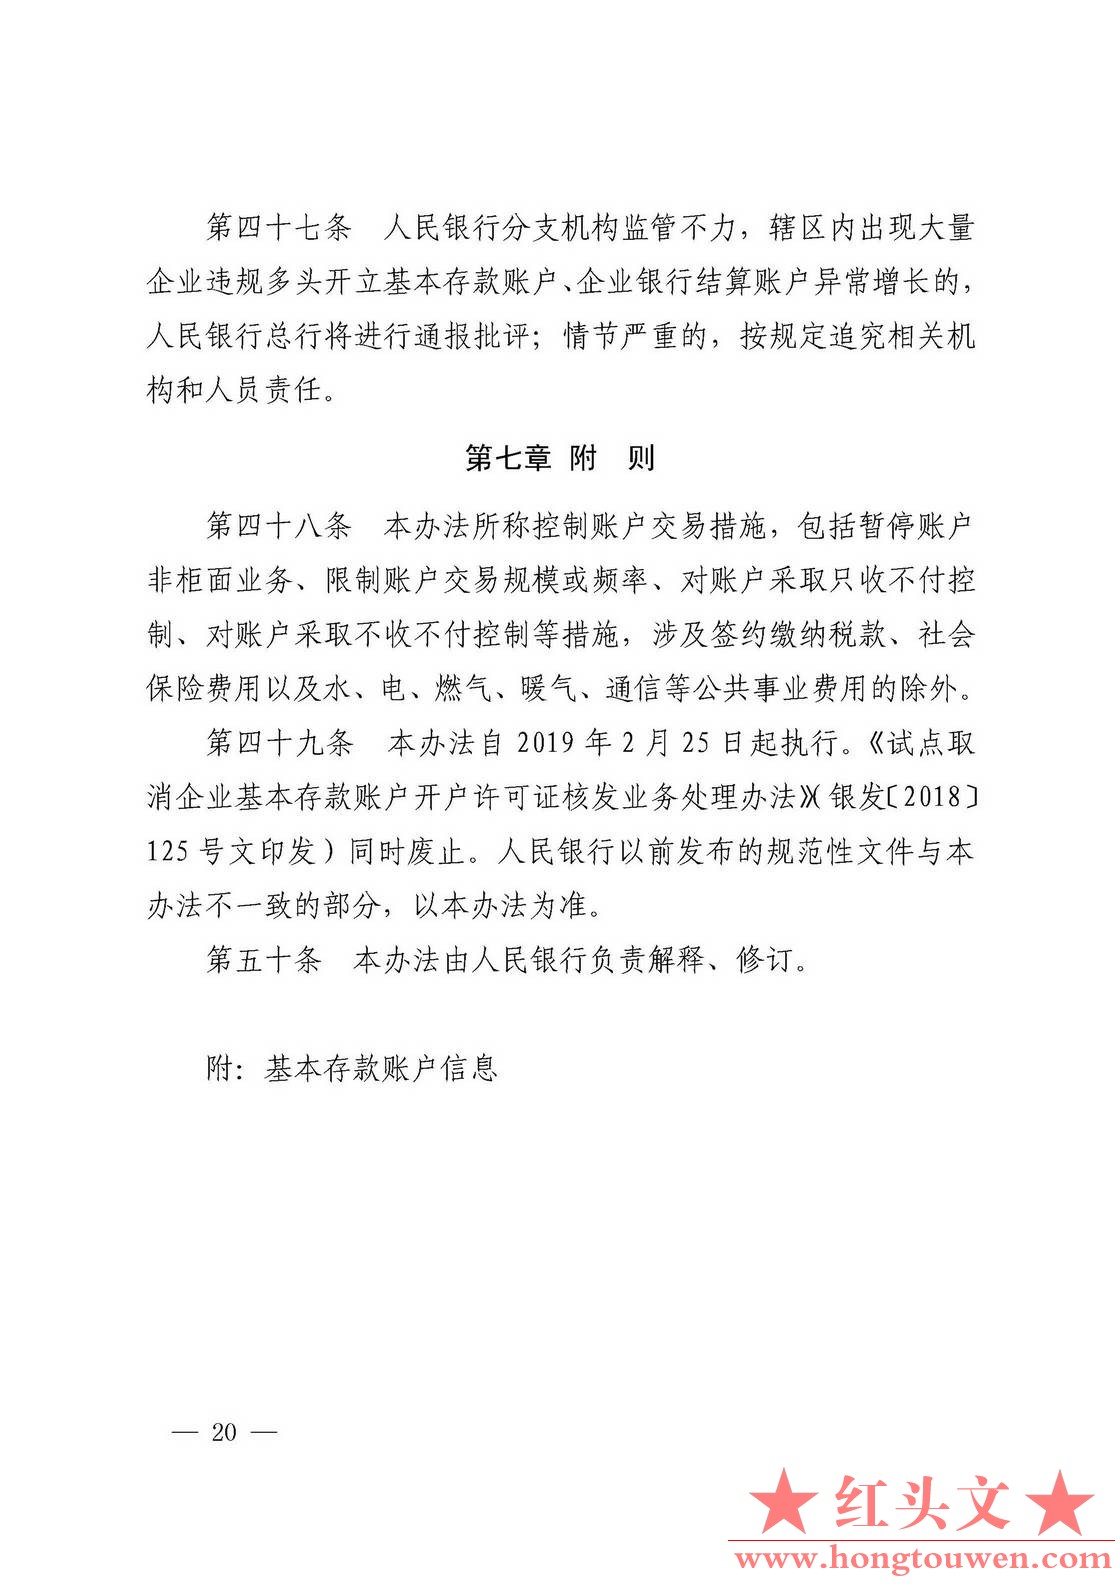 银发[2019]41号-中国人民银行关于取消企业银行账户许可的通知_页面_20.jpg.jpg